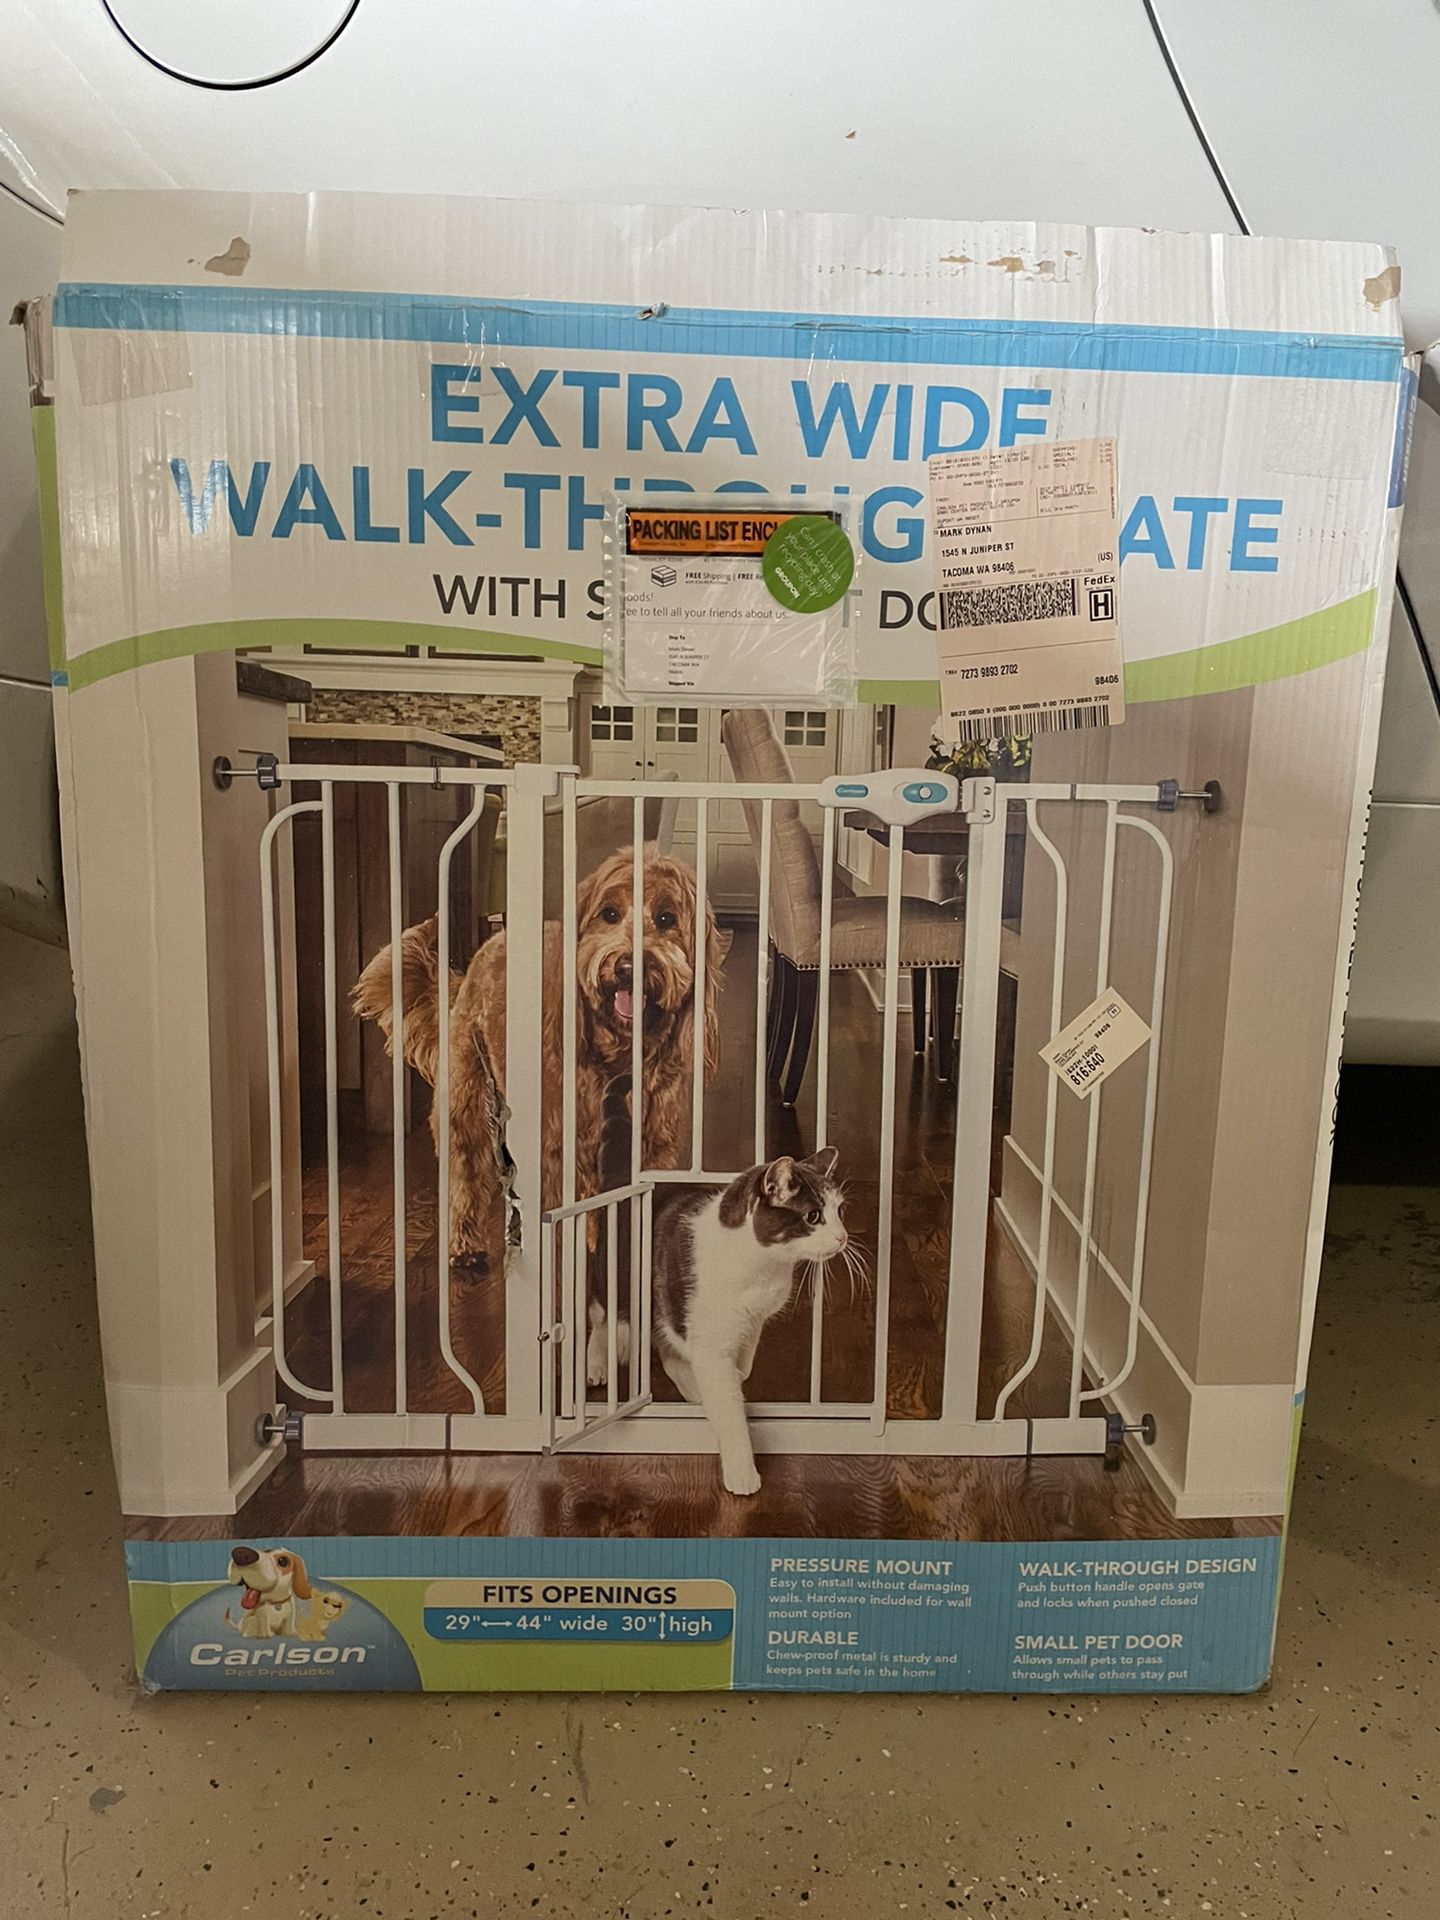 Extrawide walk-through gate